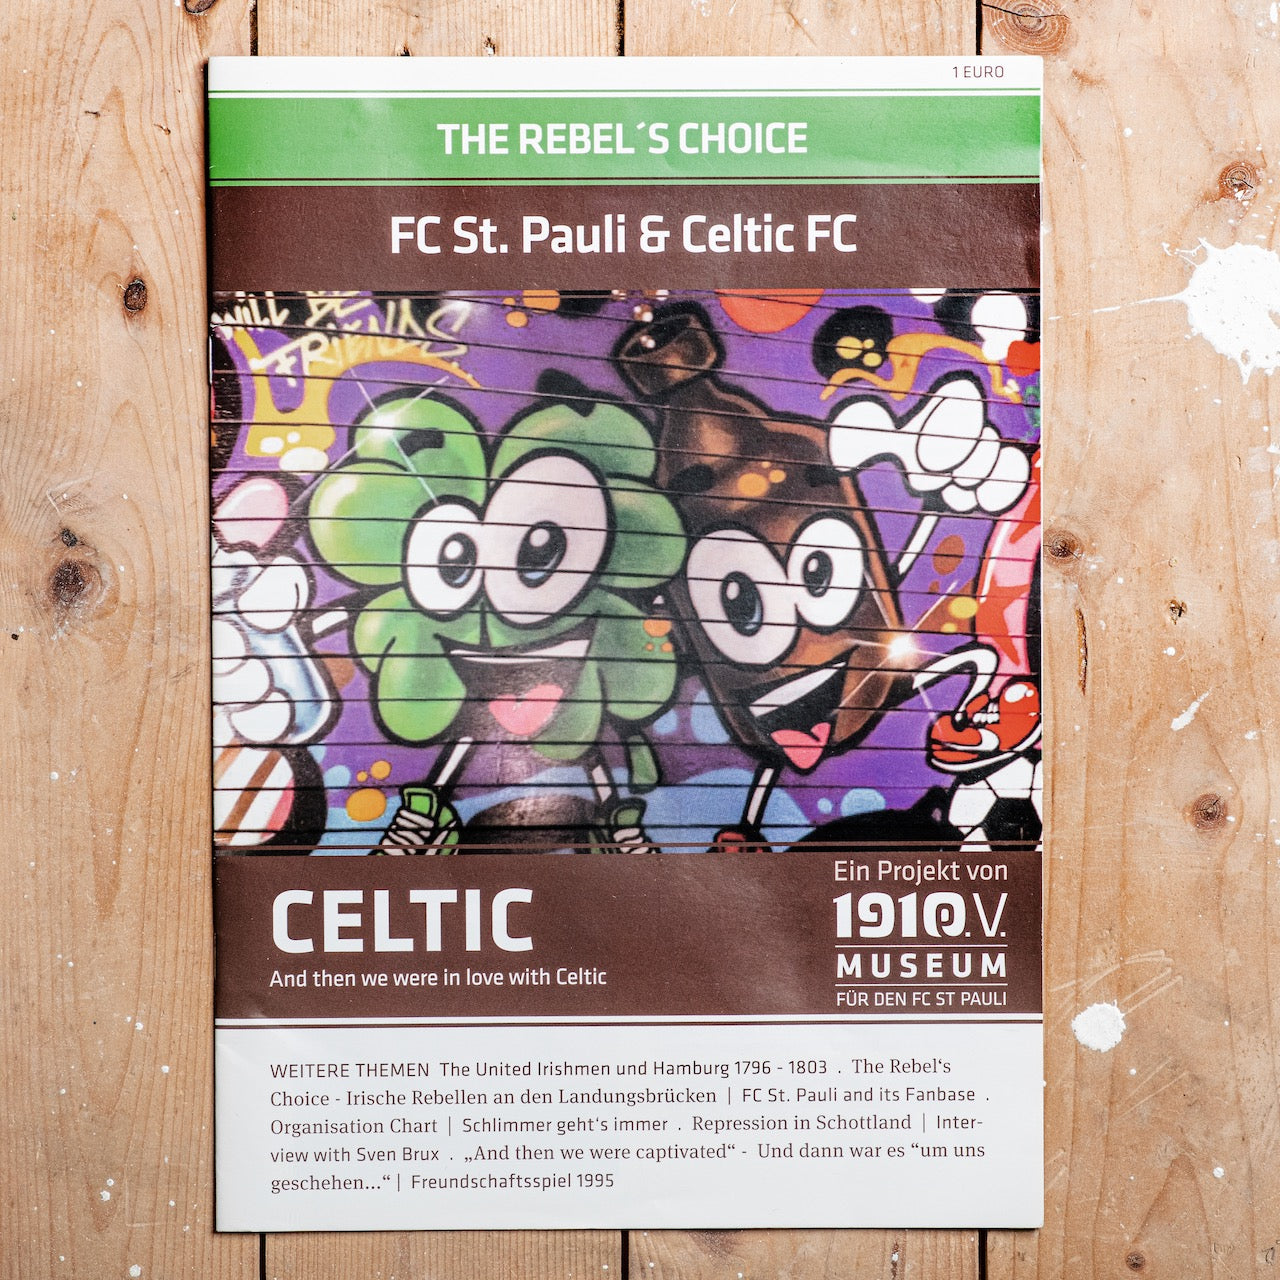 The Rebel's Choice - FC St. Pauli & Celtic FC